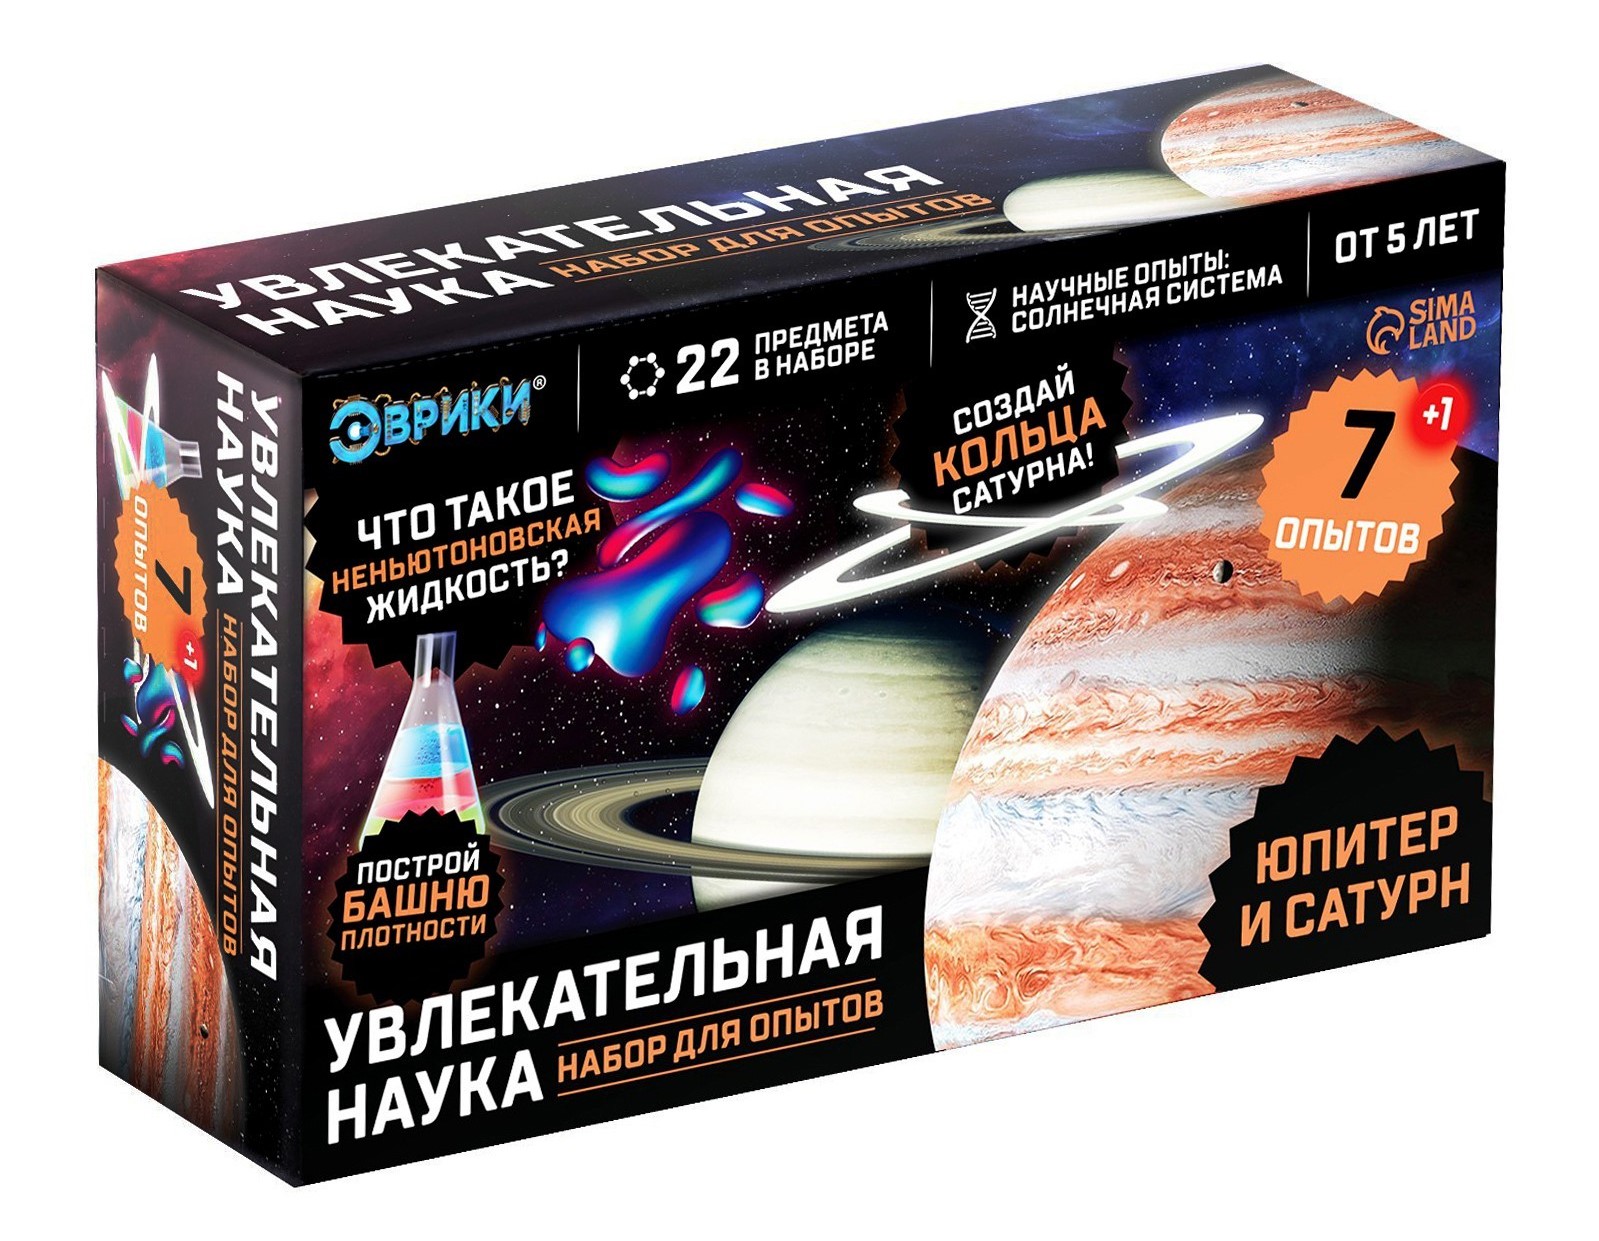 ЭВРИКИ Набор для опытов Увлекательная наука, Юпитер и Сатурн   7078294